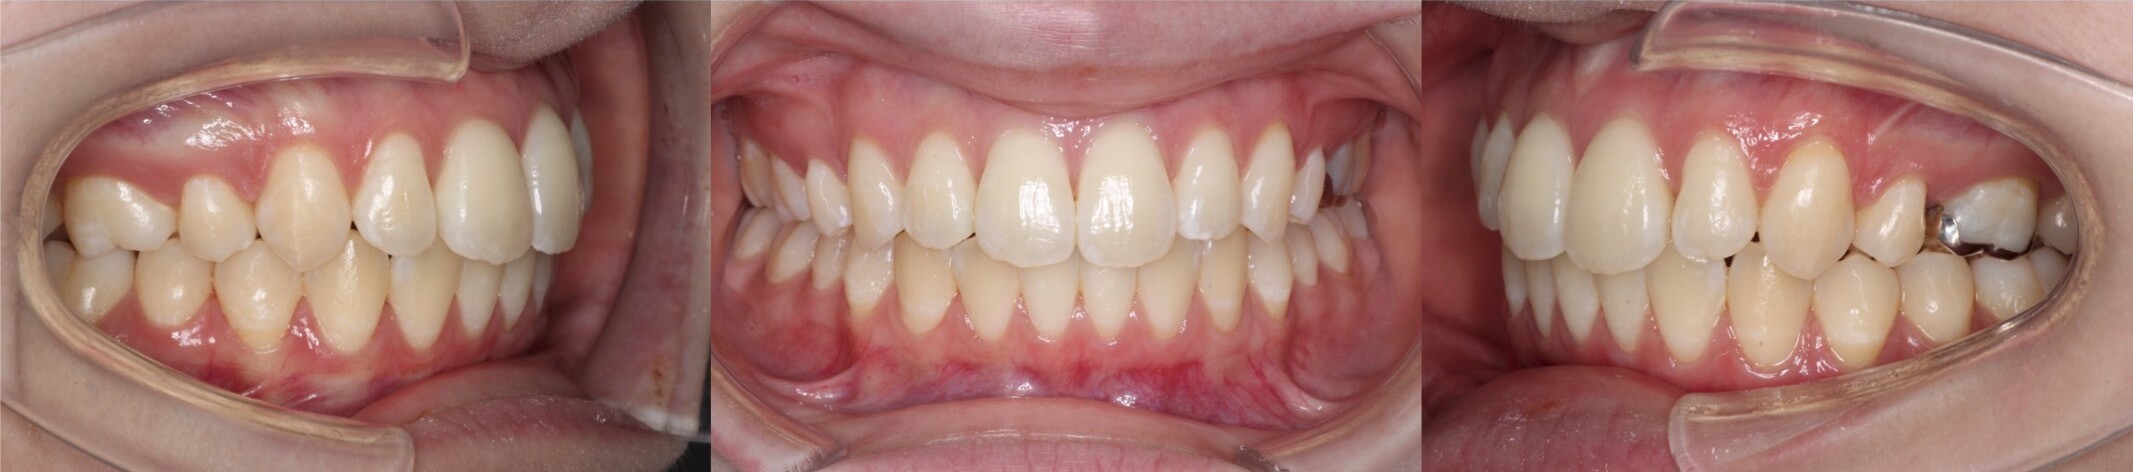 インビザライン・上顎前突抜歯症例